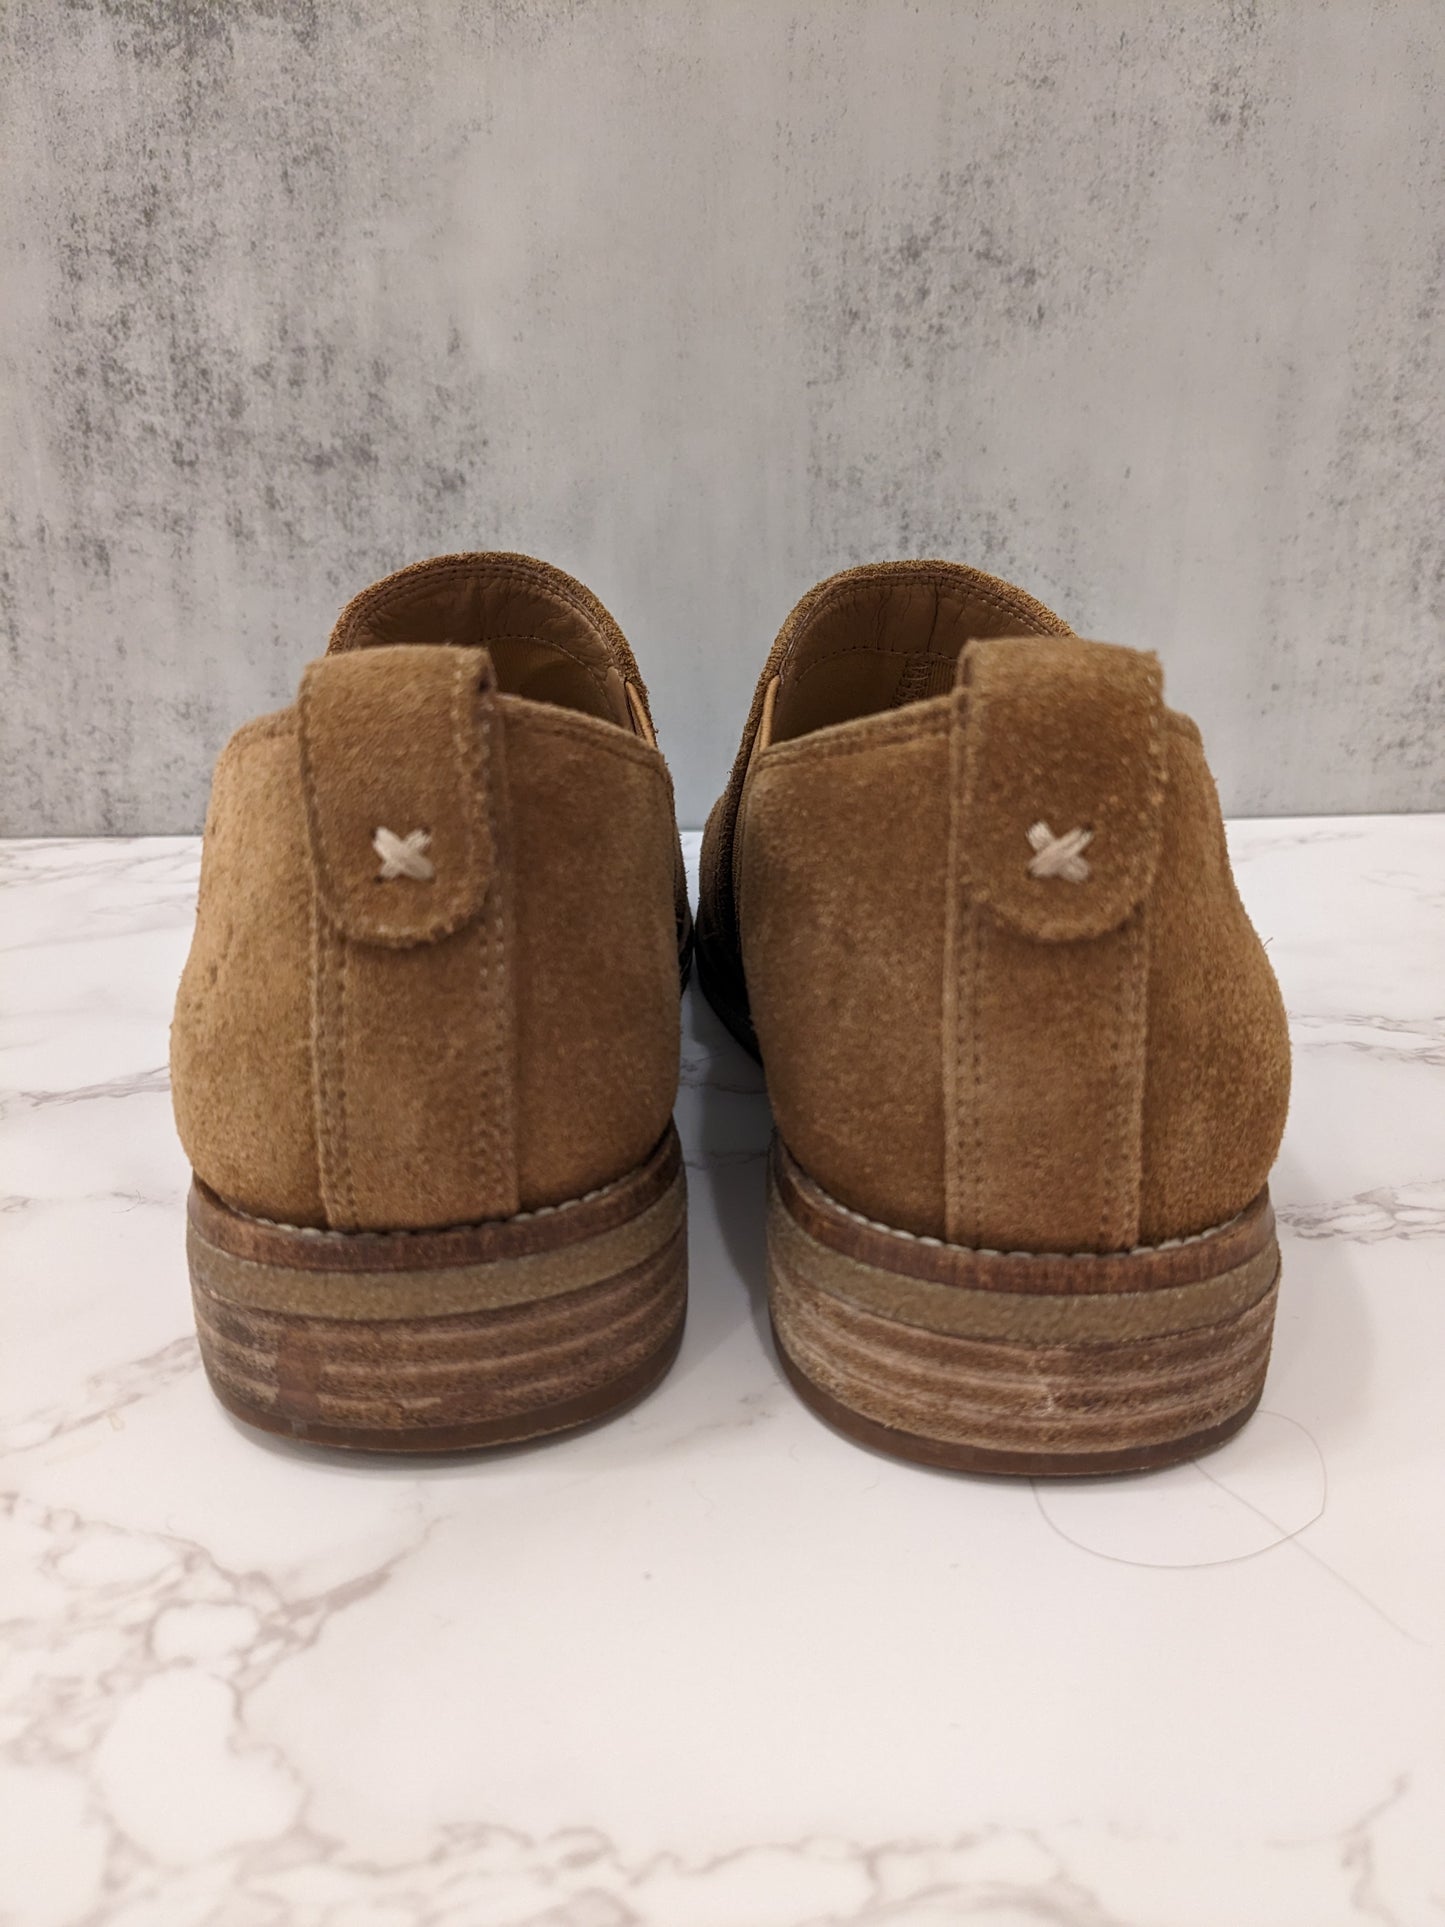 Franko Sarto Suede Tan Shoes with Fur Insoles